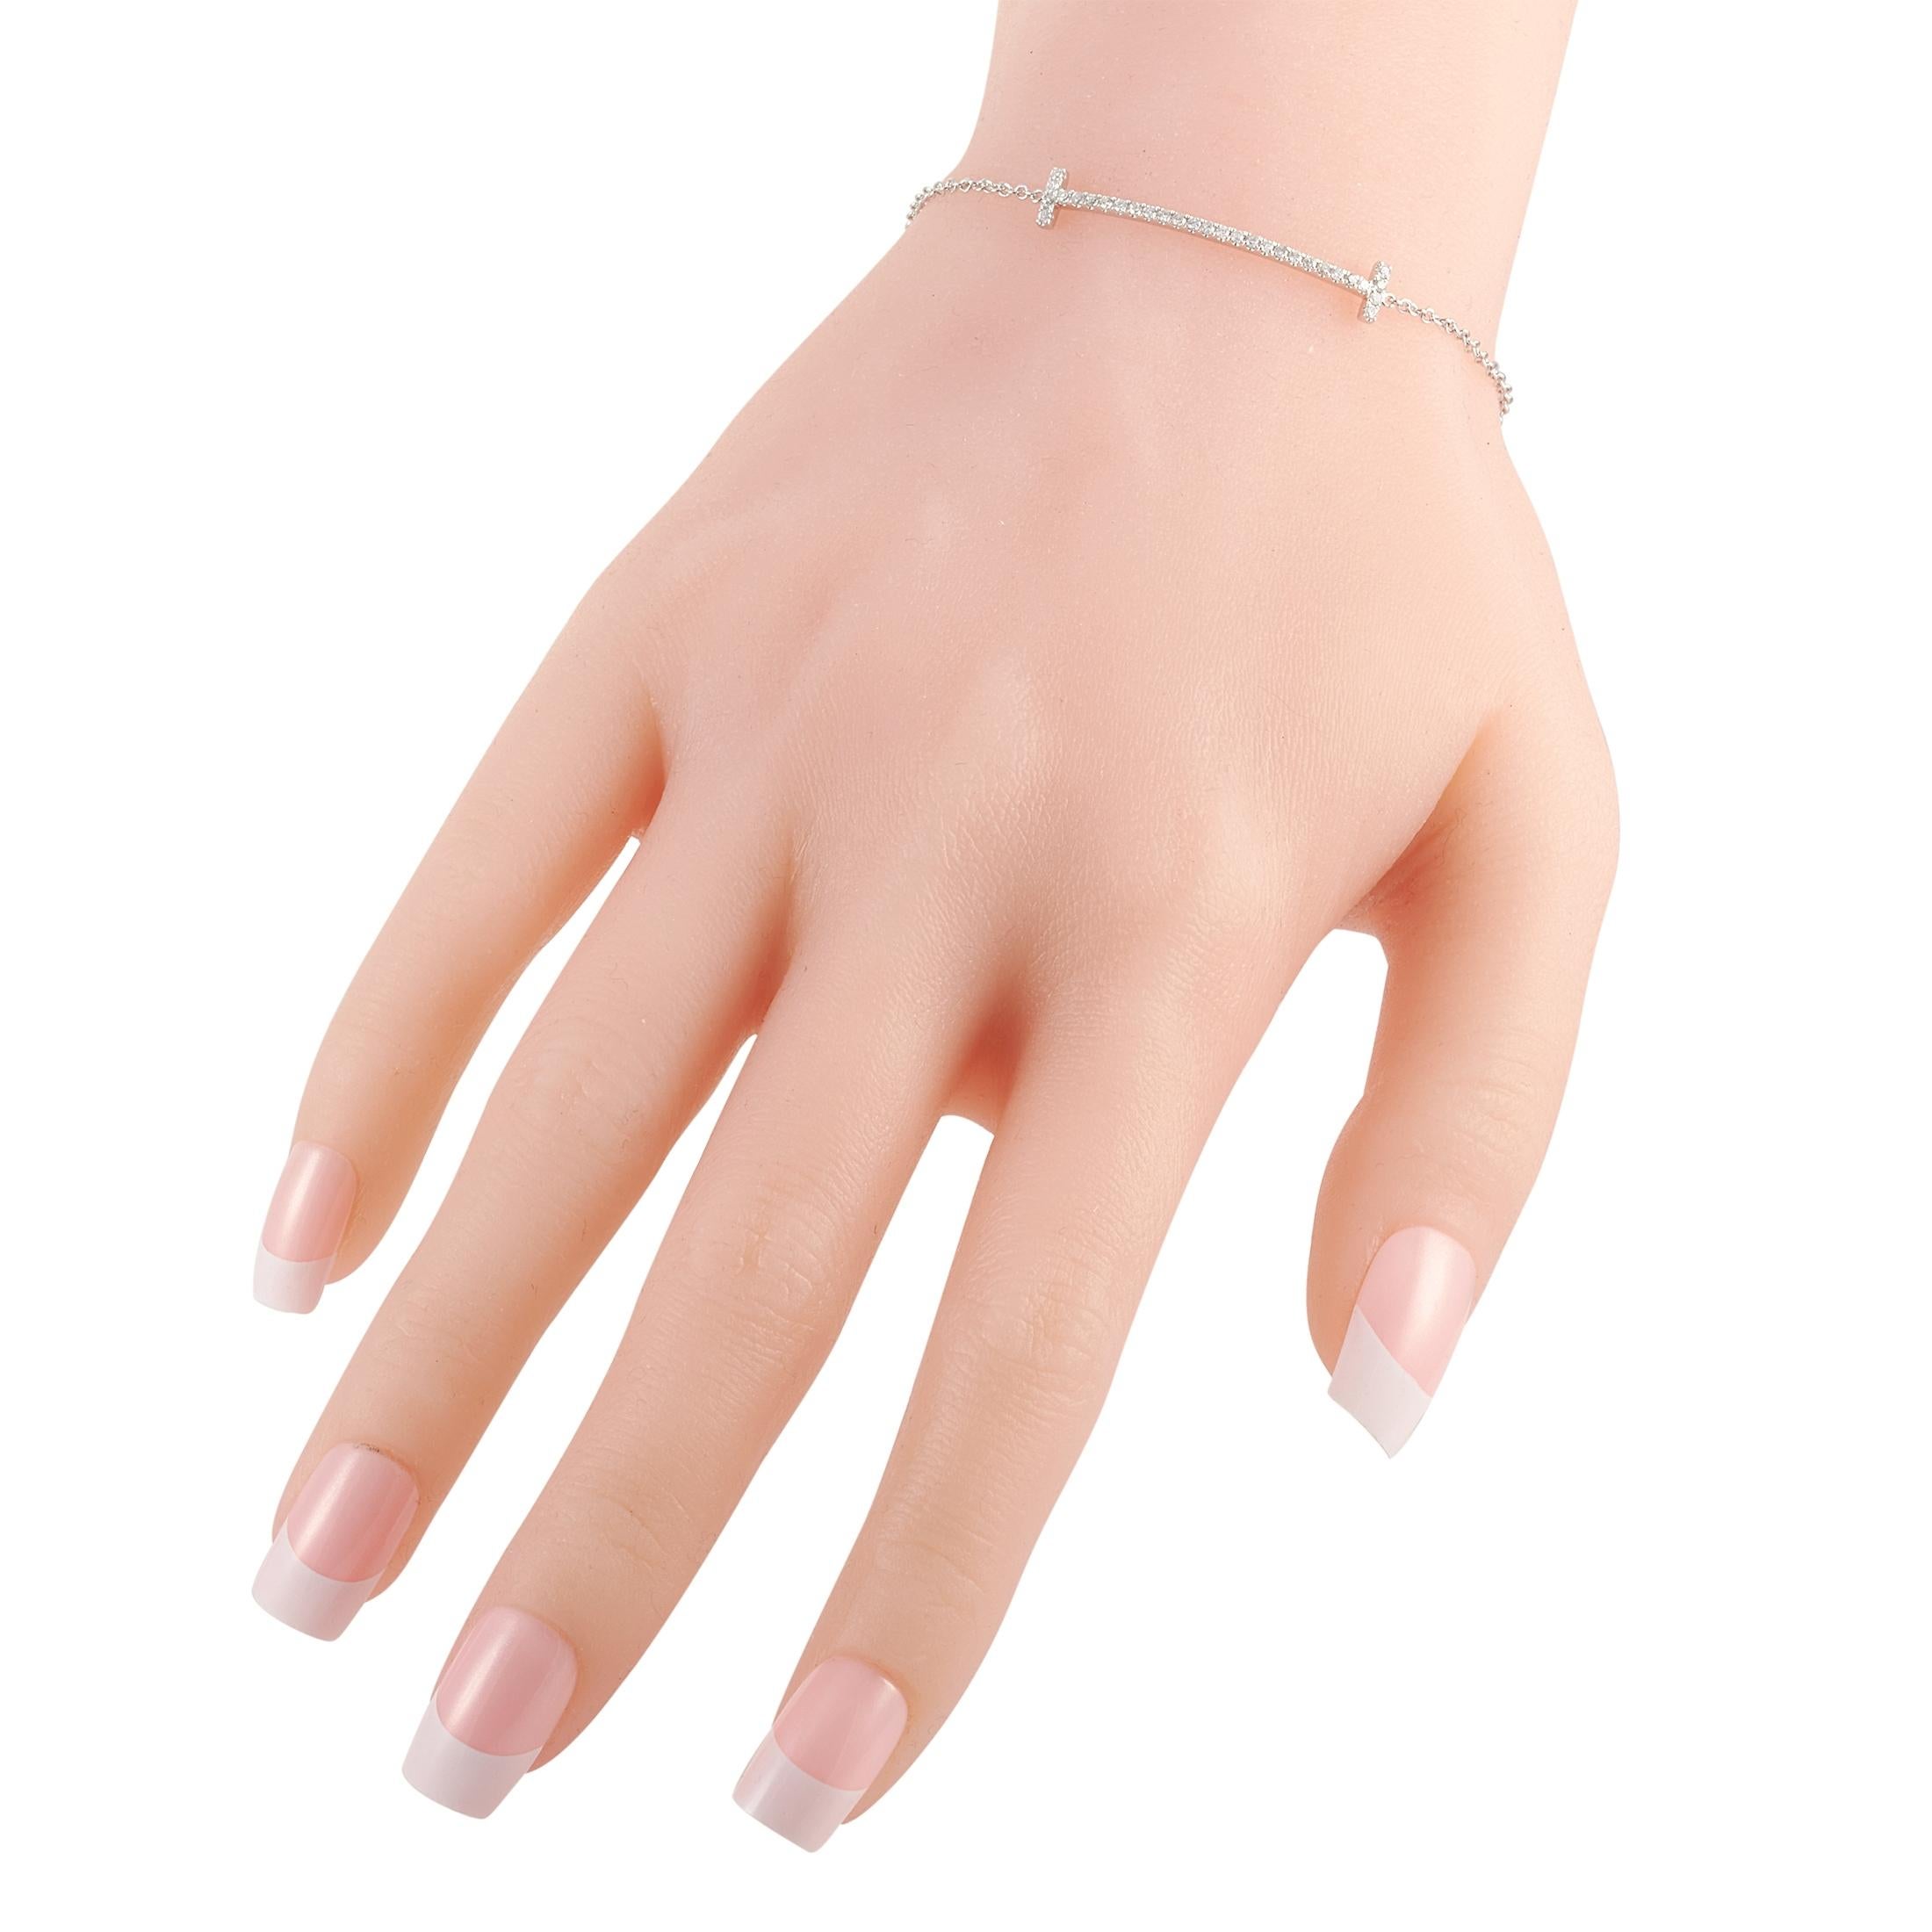 Ce bracelet LB Exclusive est fabriqué en or blanc 14 carats et pèse 1,9 gramme. Il mesure 6,50 pouces de long. Le bracelet est serti de diamants totalisant 0.25 carats.